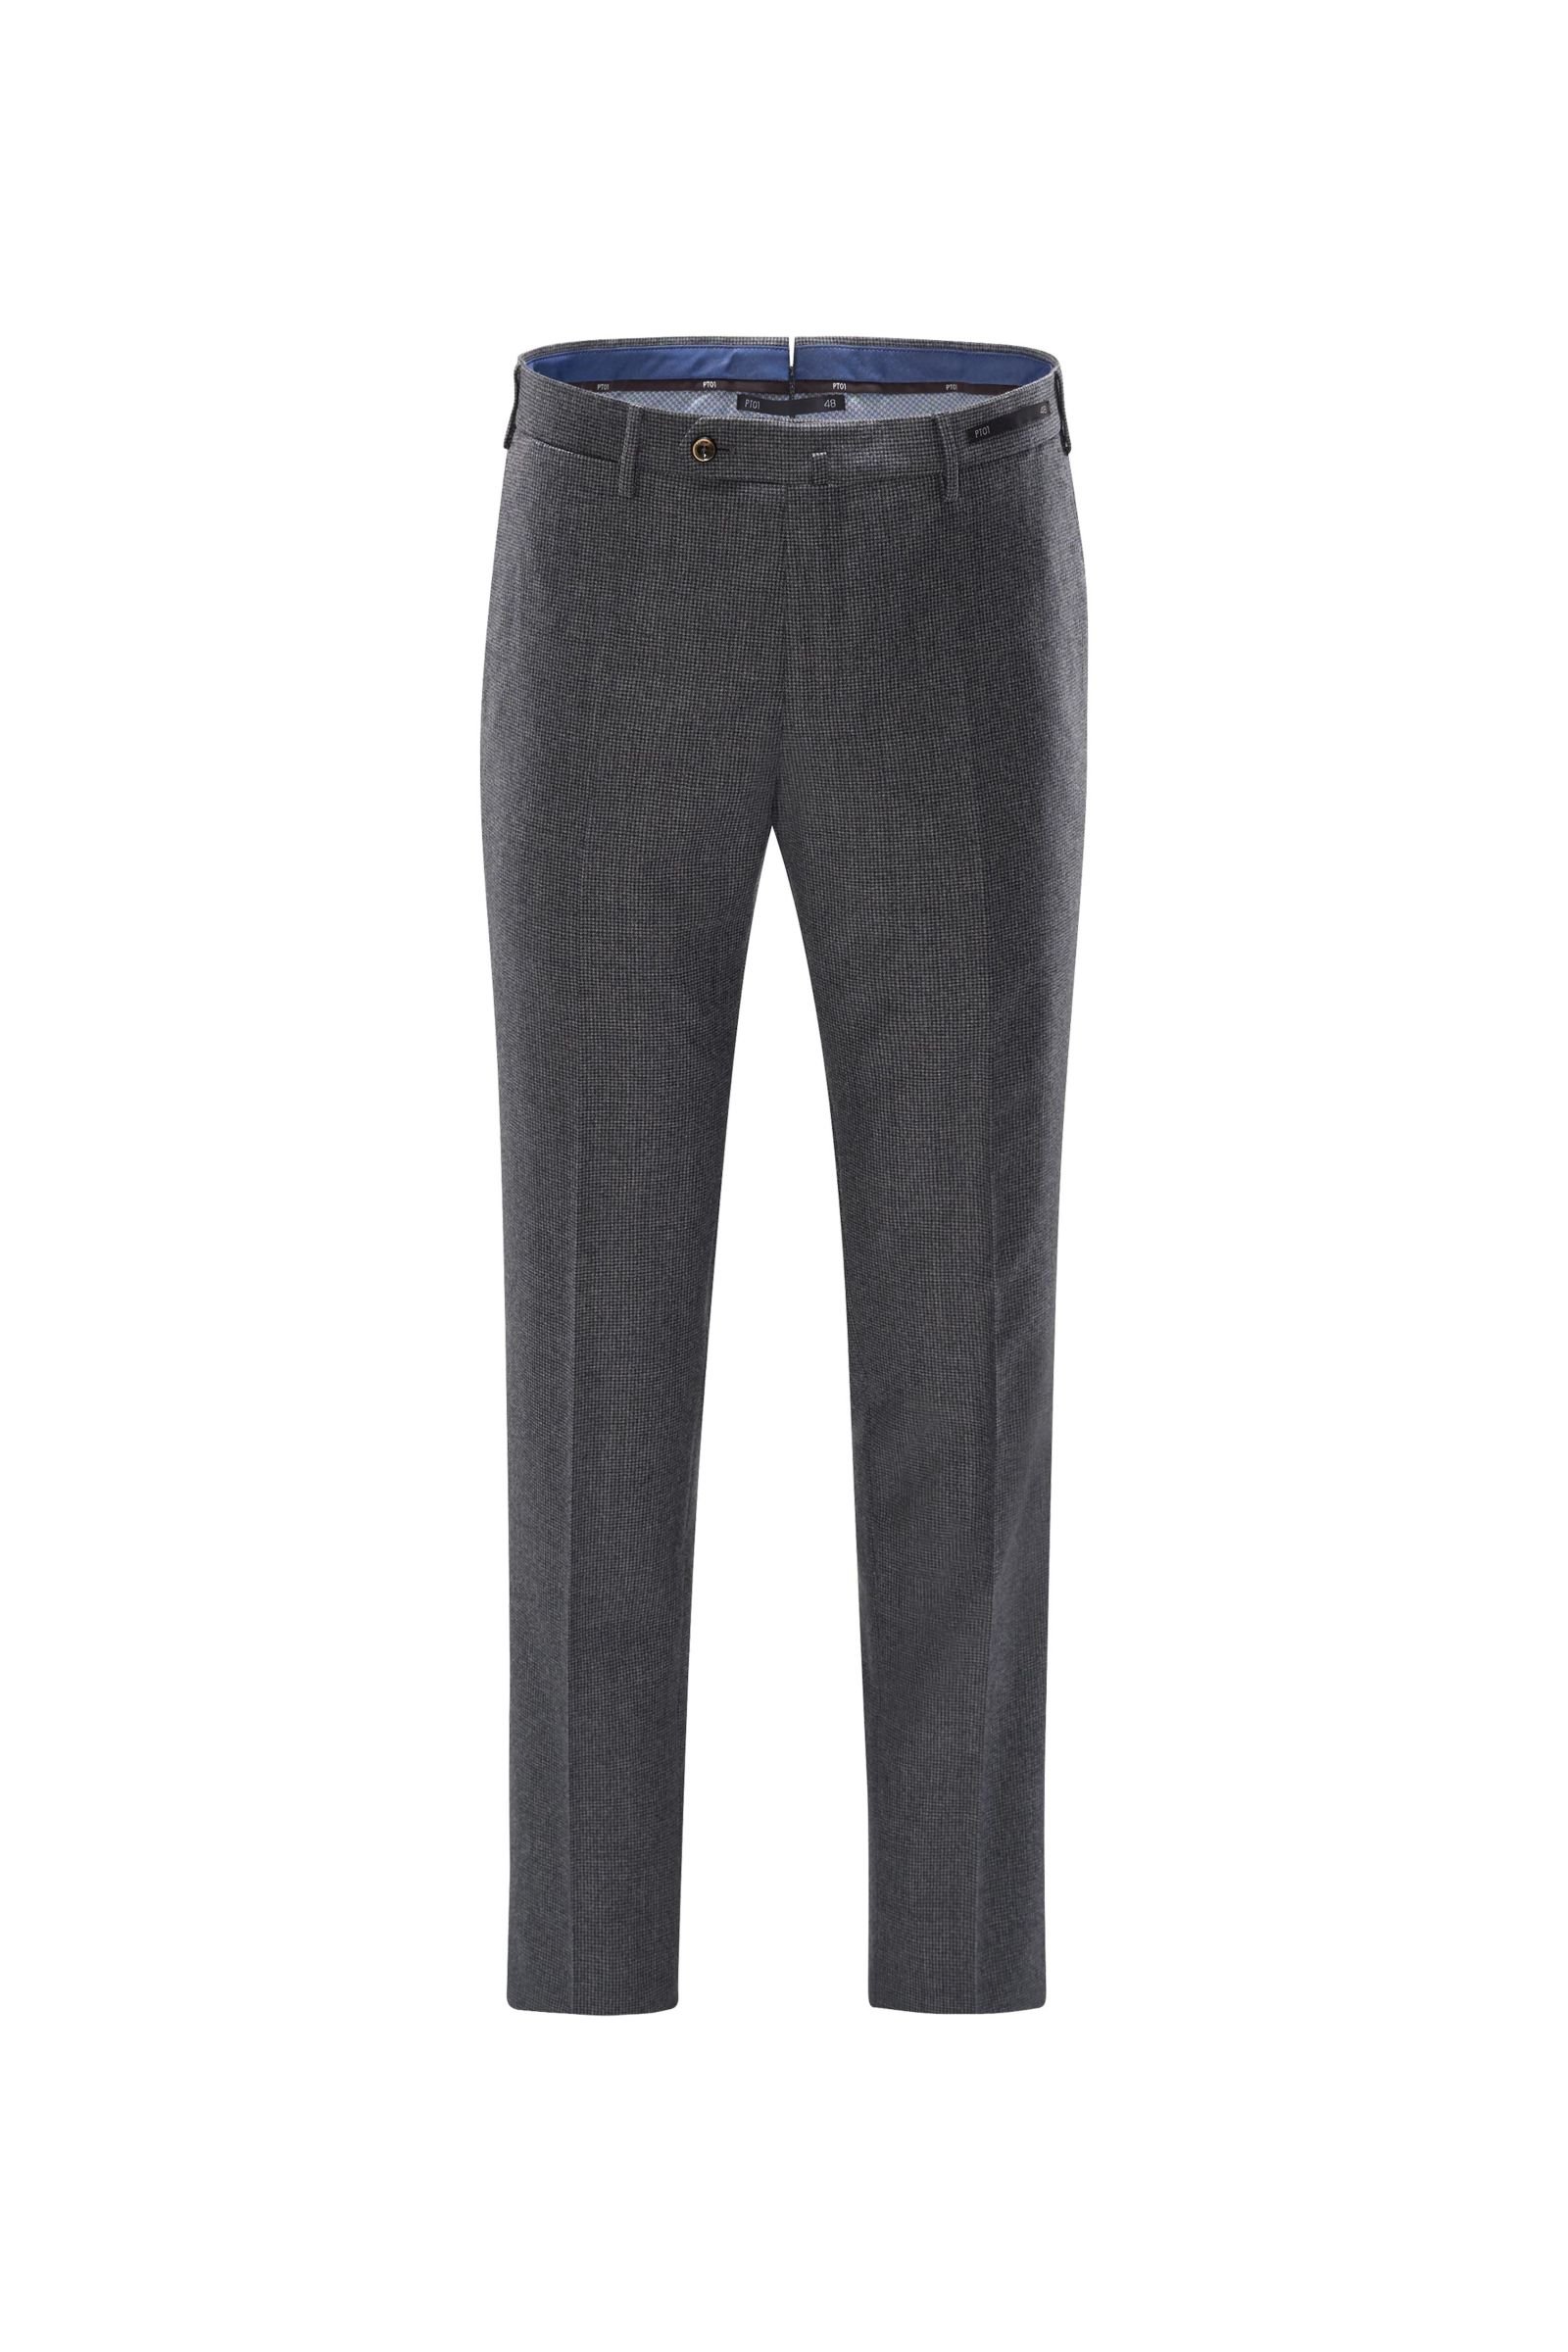 Wool trousers 'Slim Fit' dark grey checked